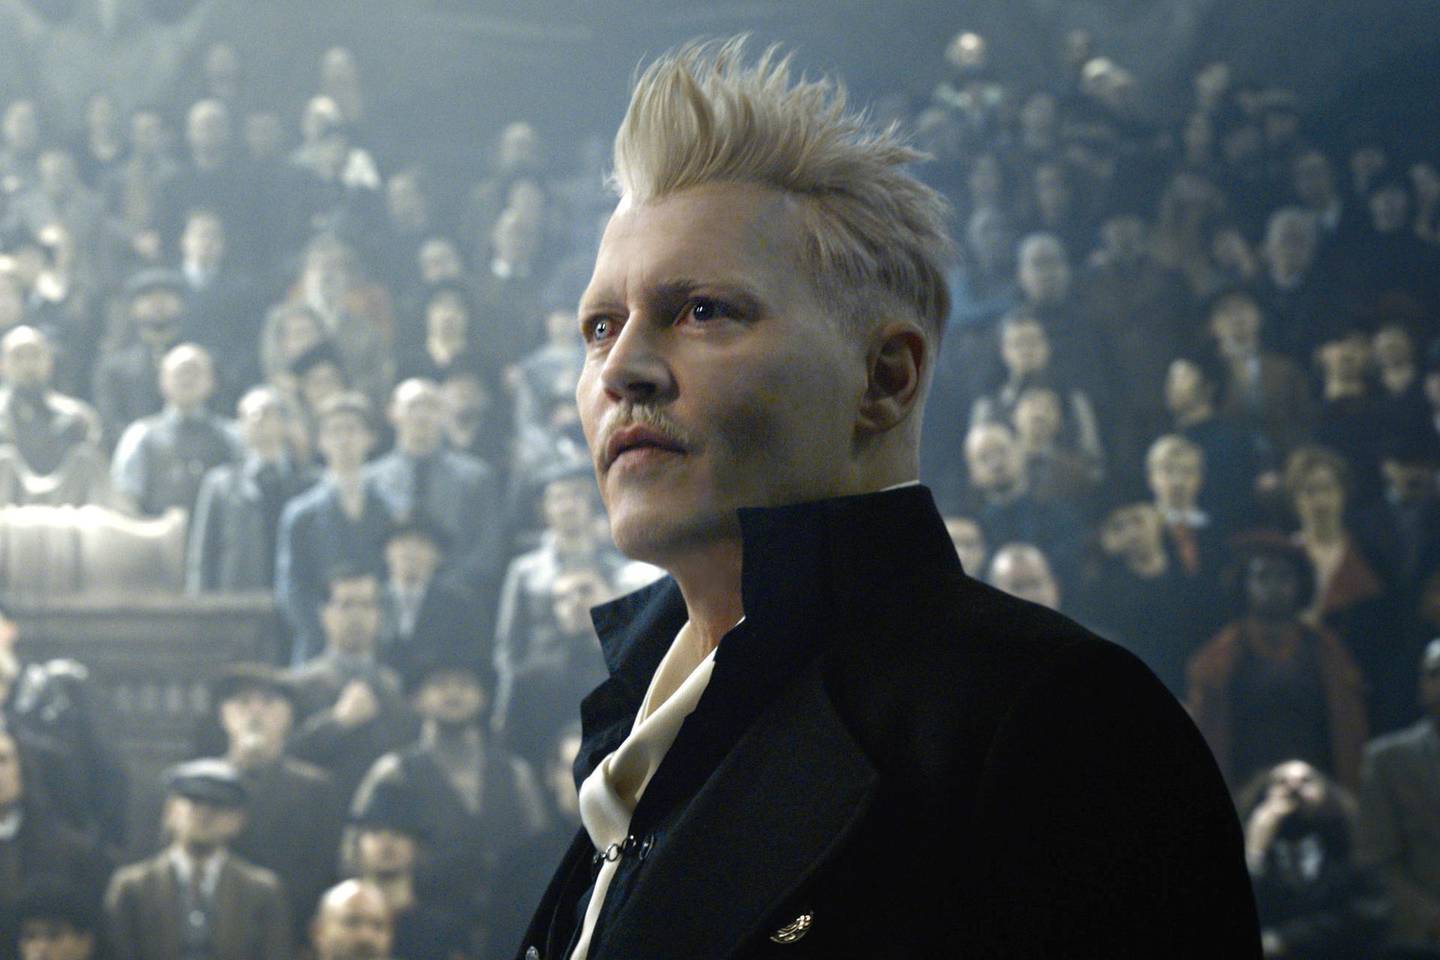 Johnny Depp as Gellert Grindelwald in Fantastic Beasts: The Crimes of Grindelwald. Courtesy Warner Bros. Pictures